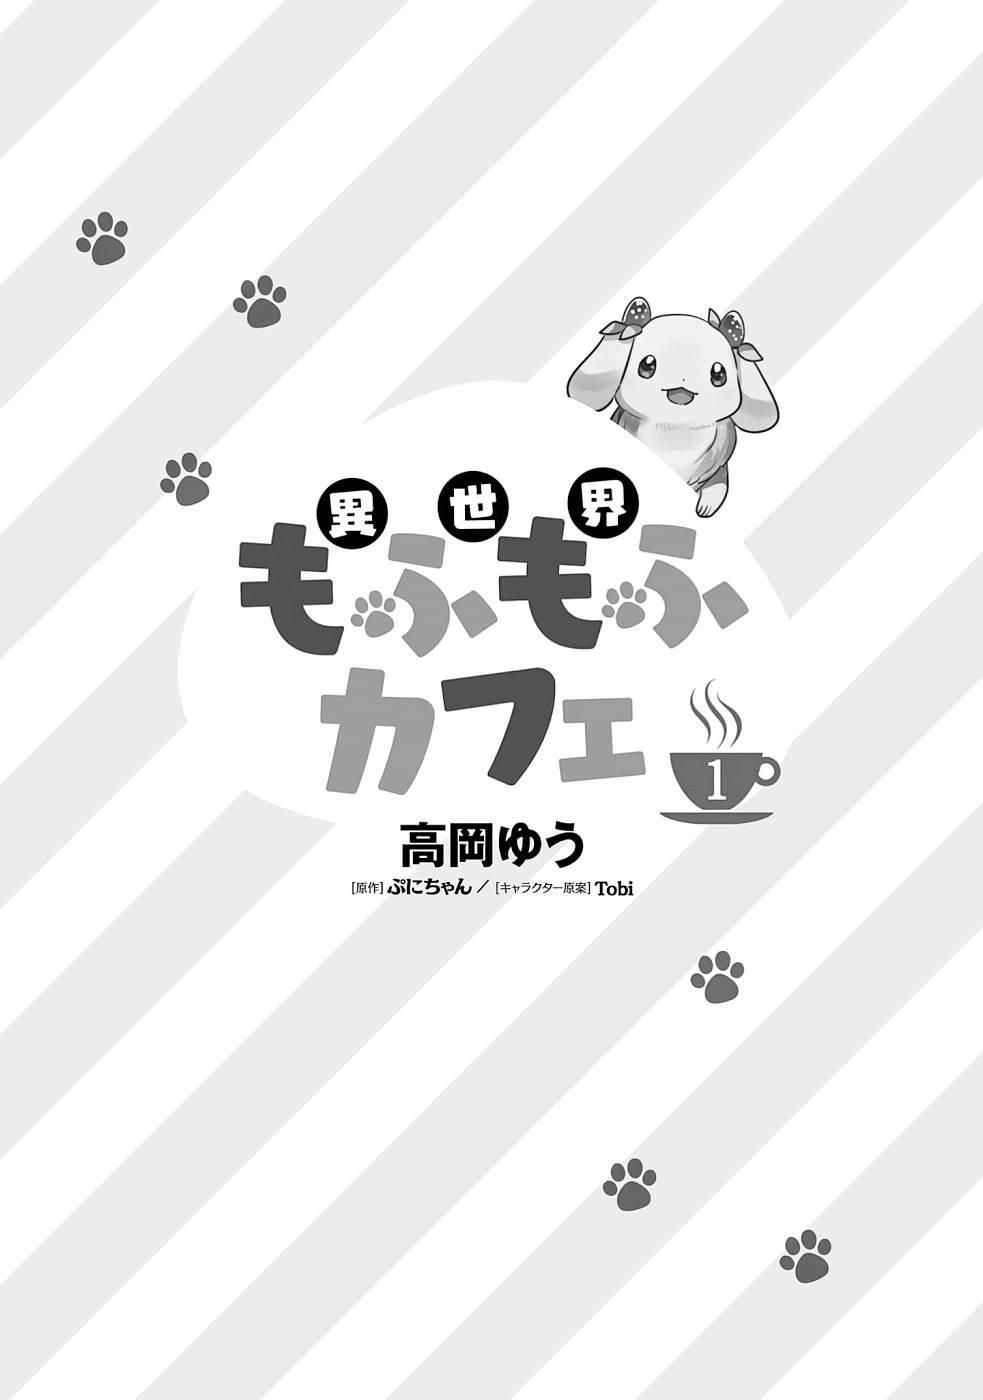 Isekai Mofumofu Cafe Chapter 1